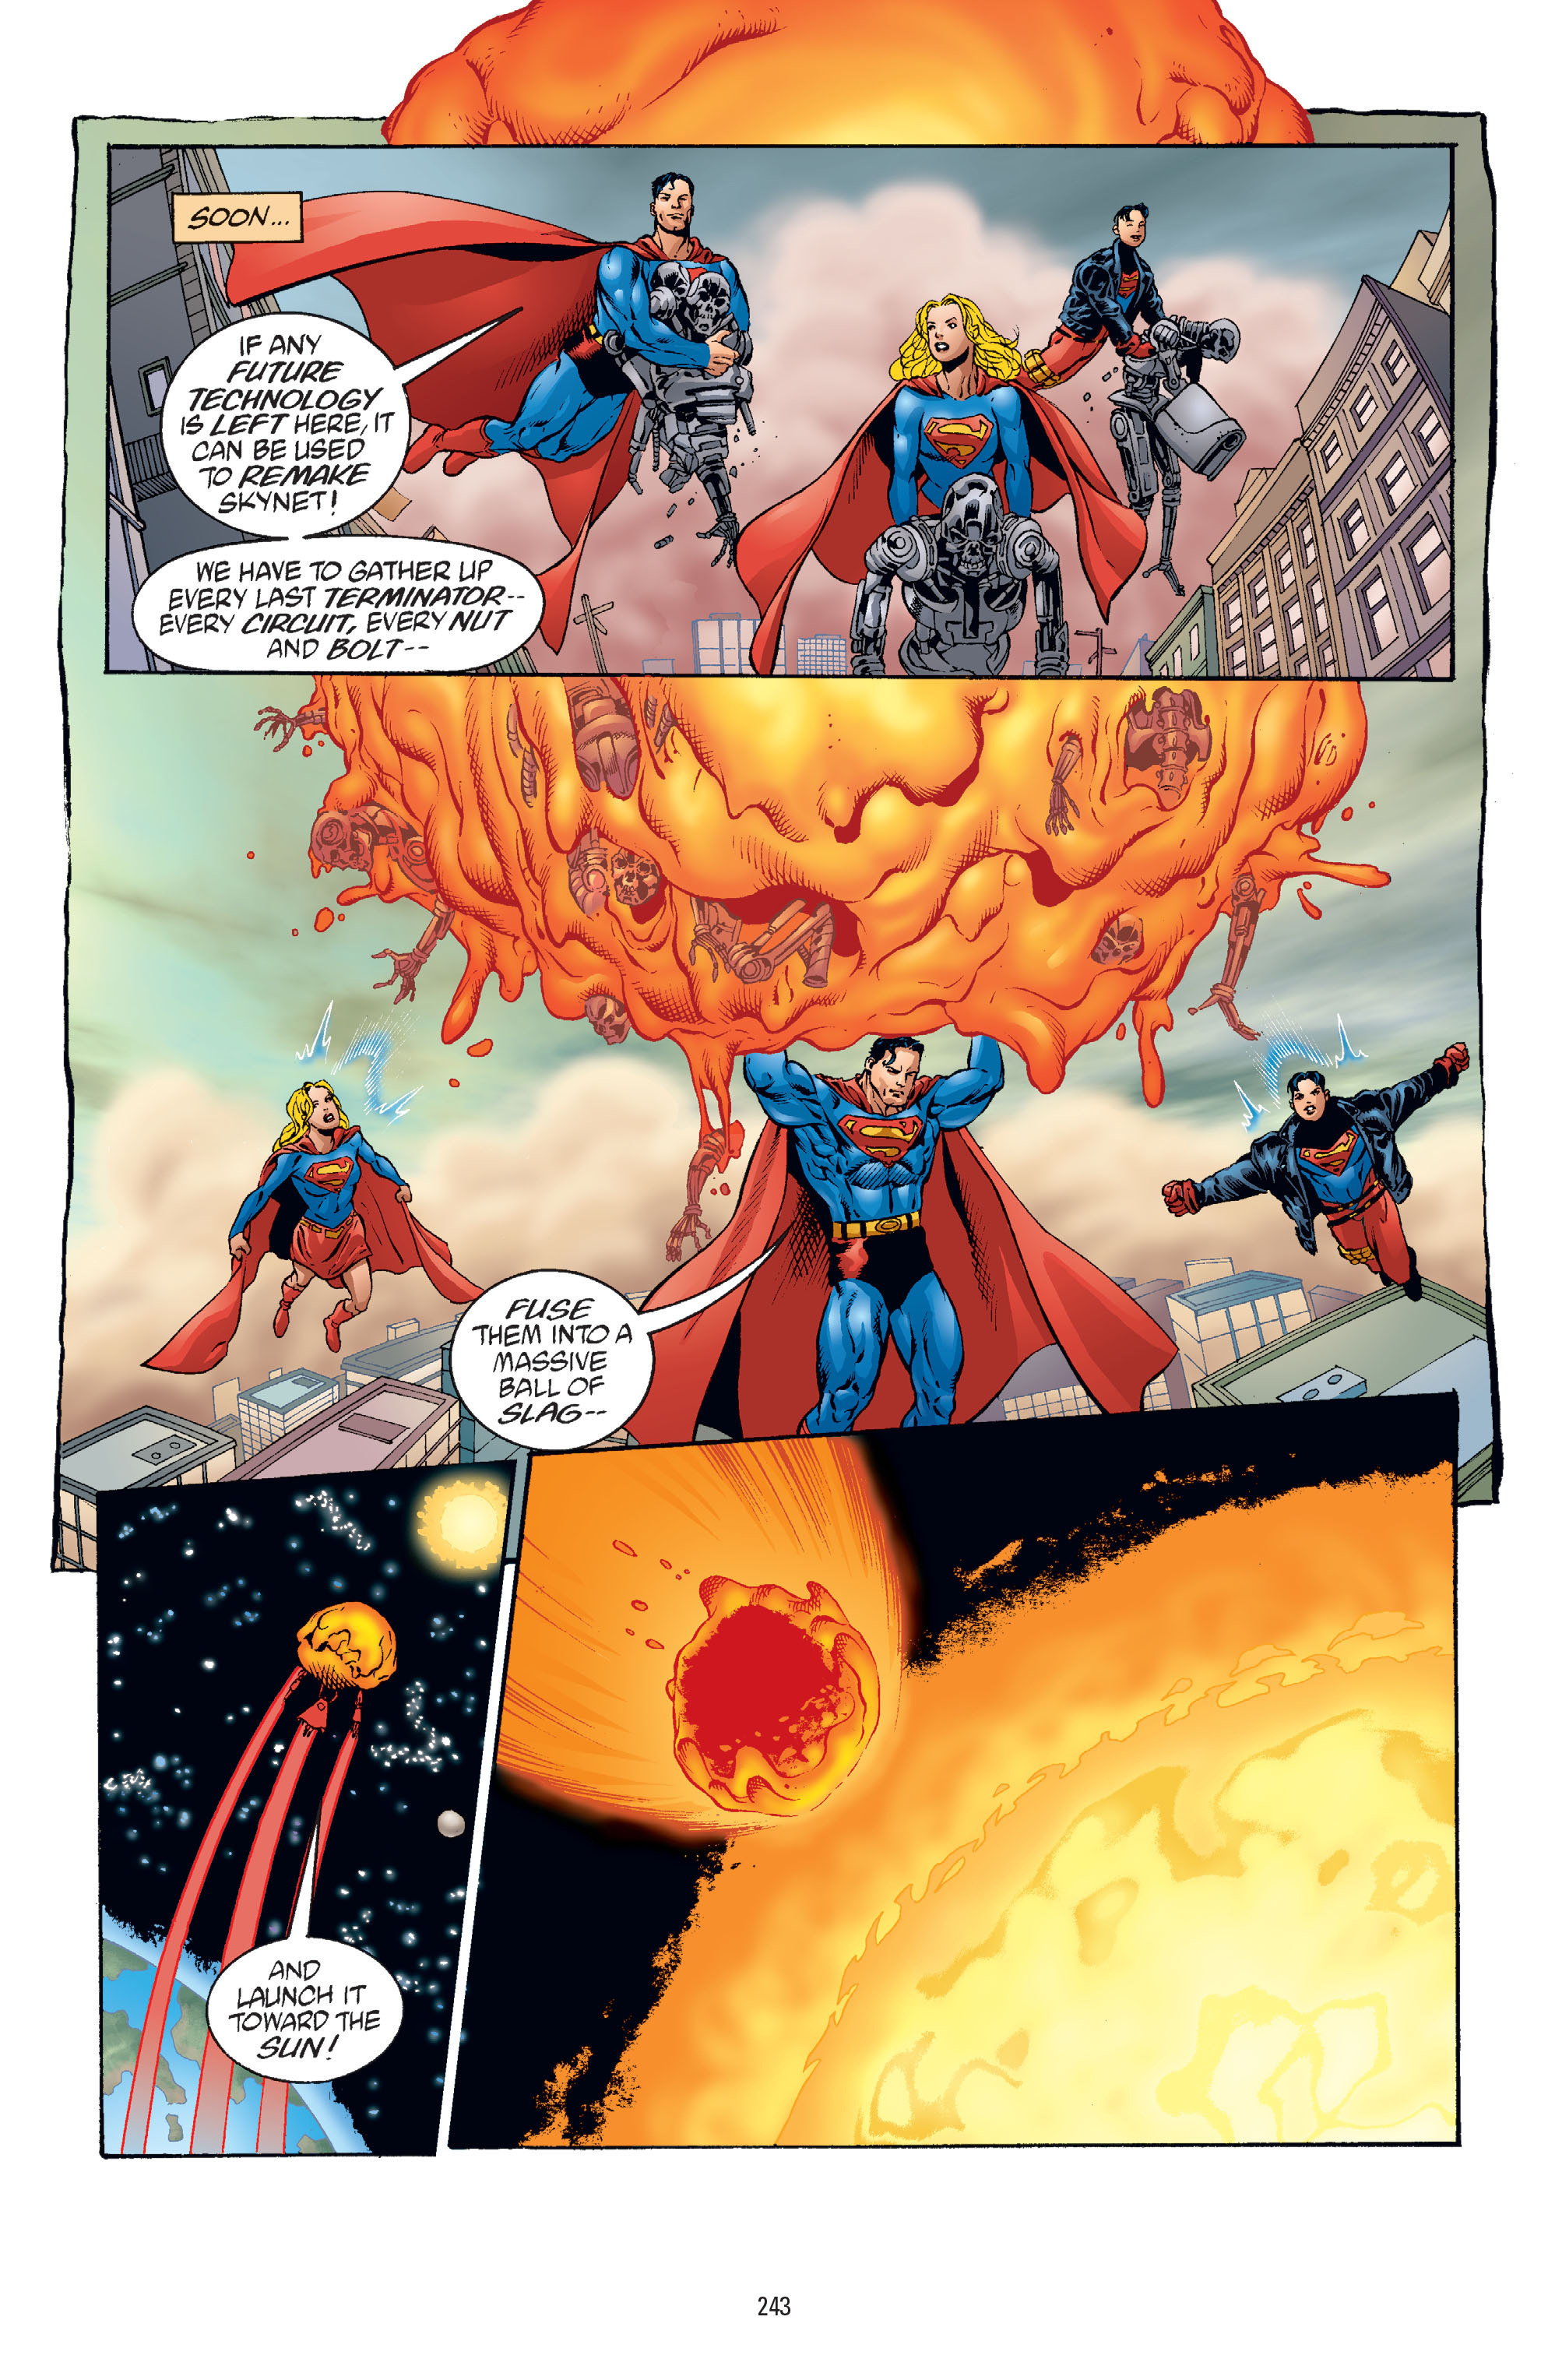 DC Comics/Dark Horse Comics: Justice League Full #1 - English 235